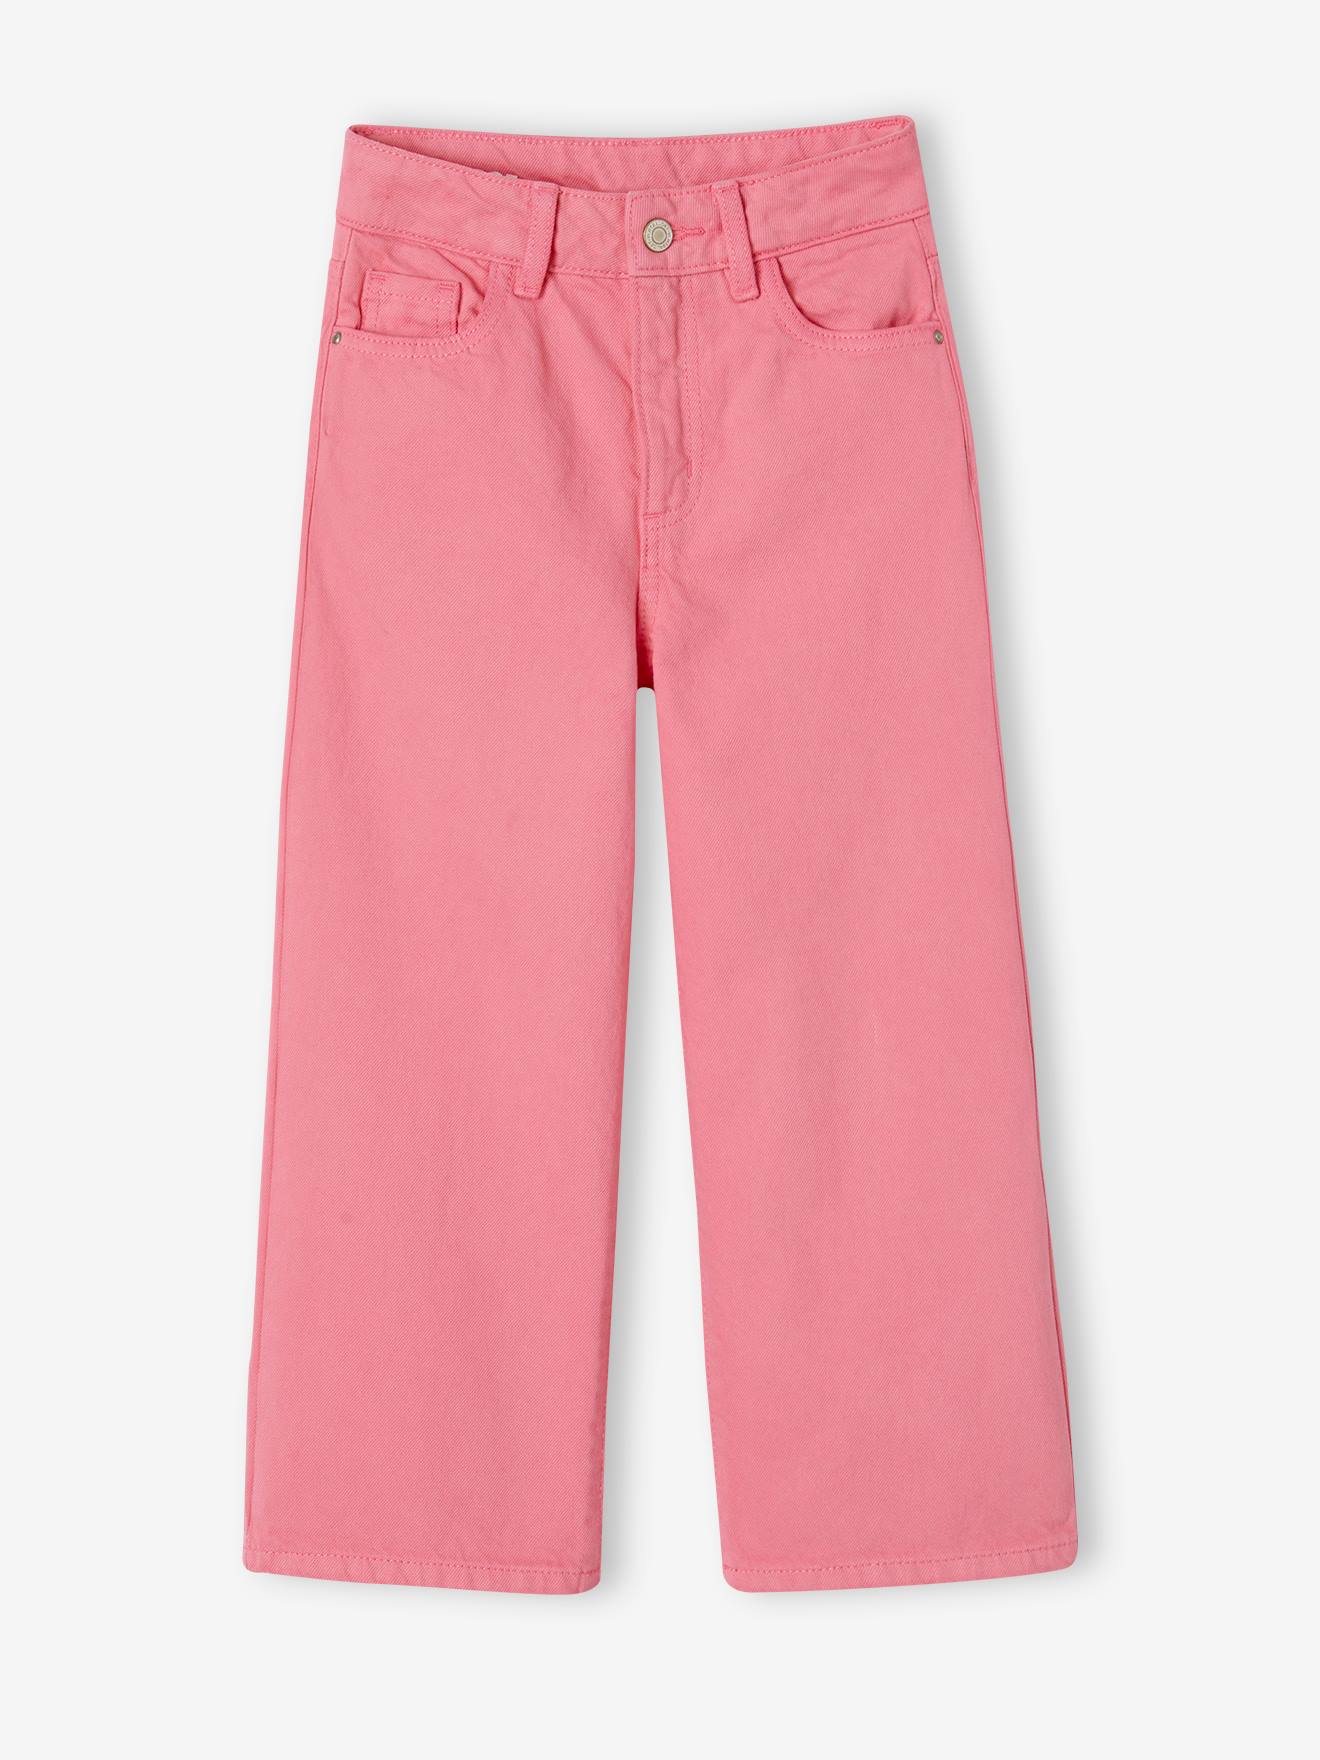 pantalon large fille rose bonbon